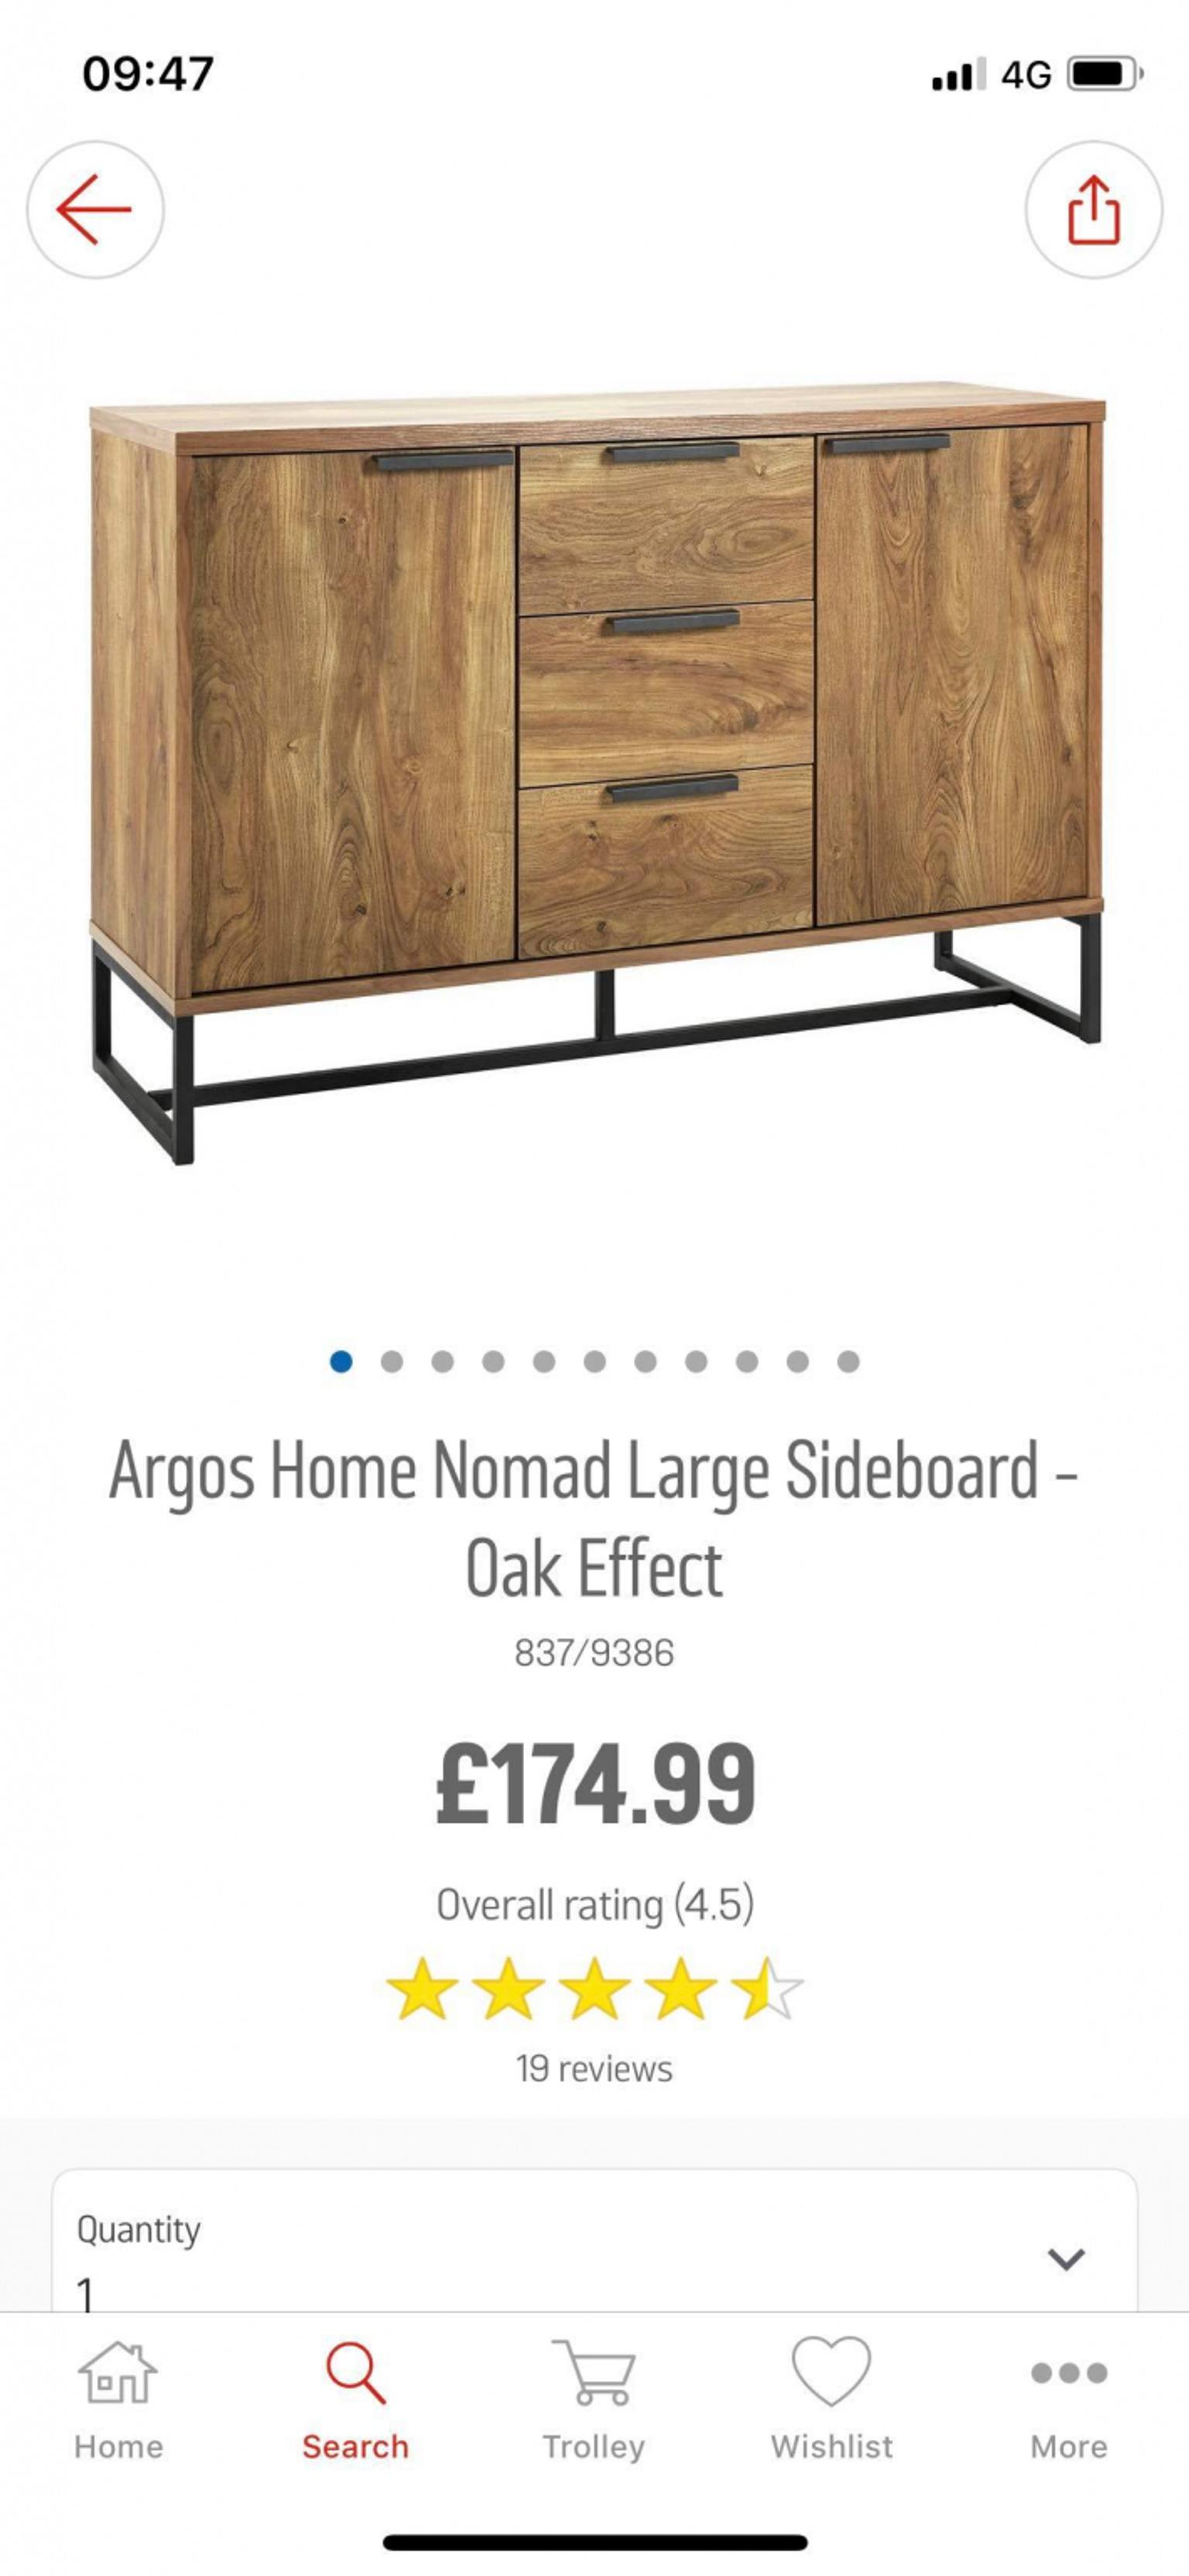 Argos Home Nomad Large Sideboard Oak Effect 